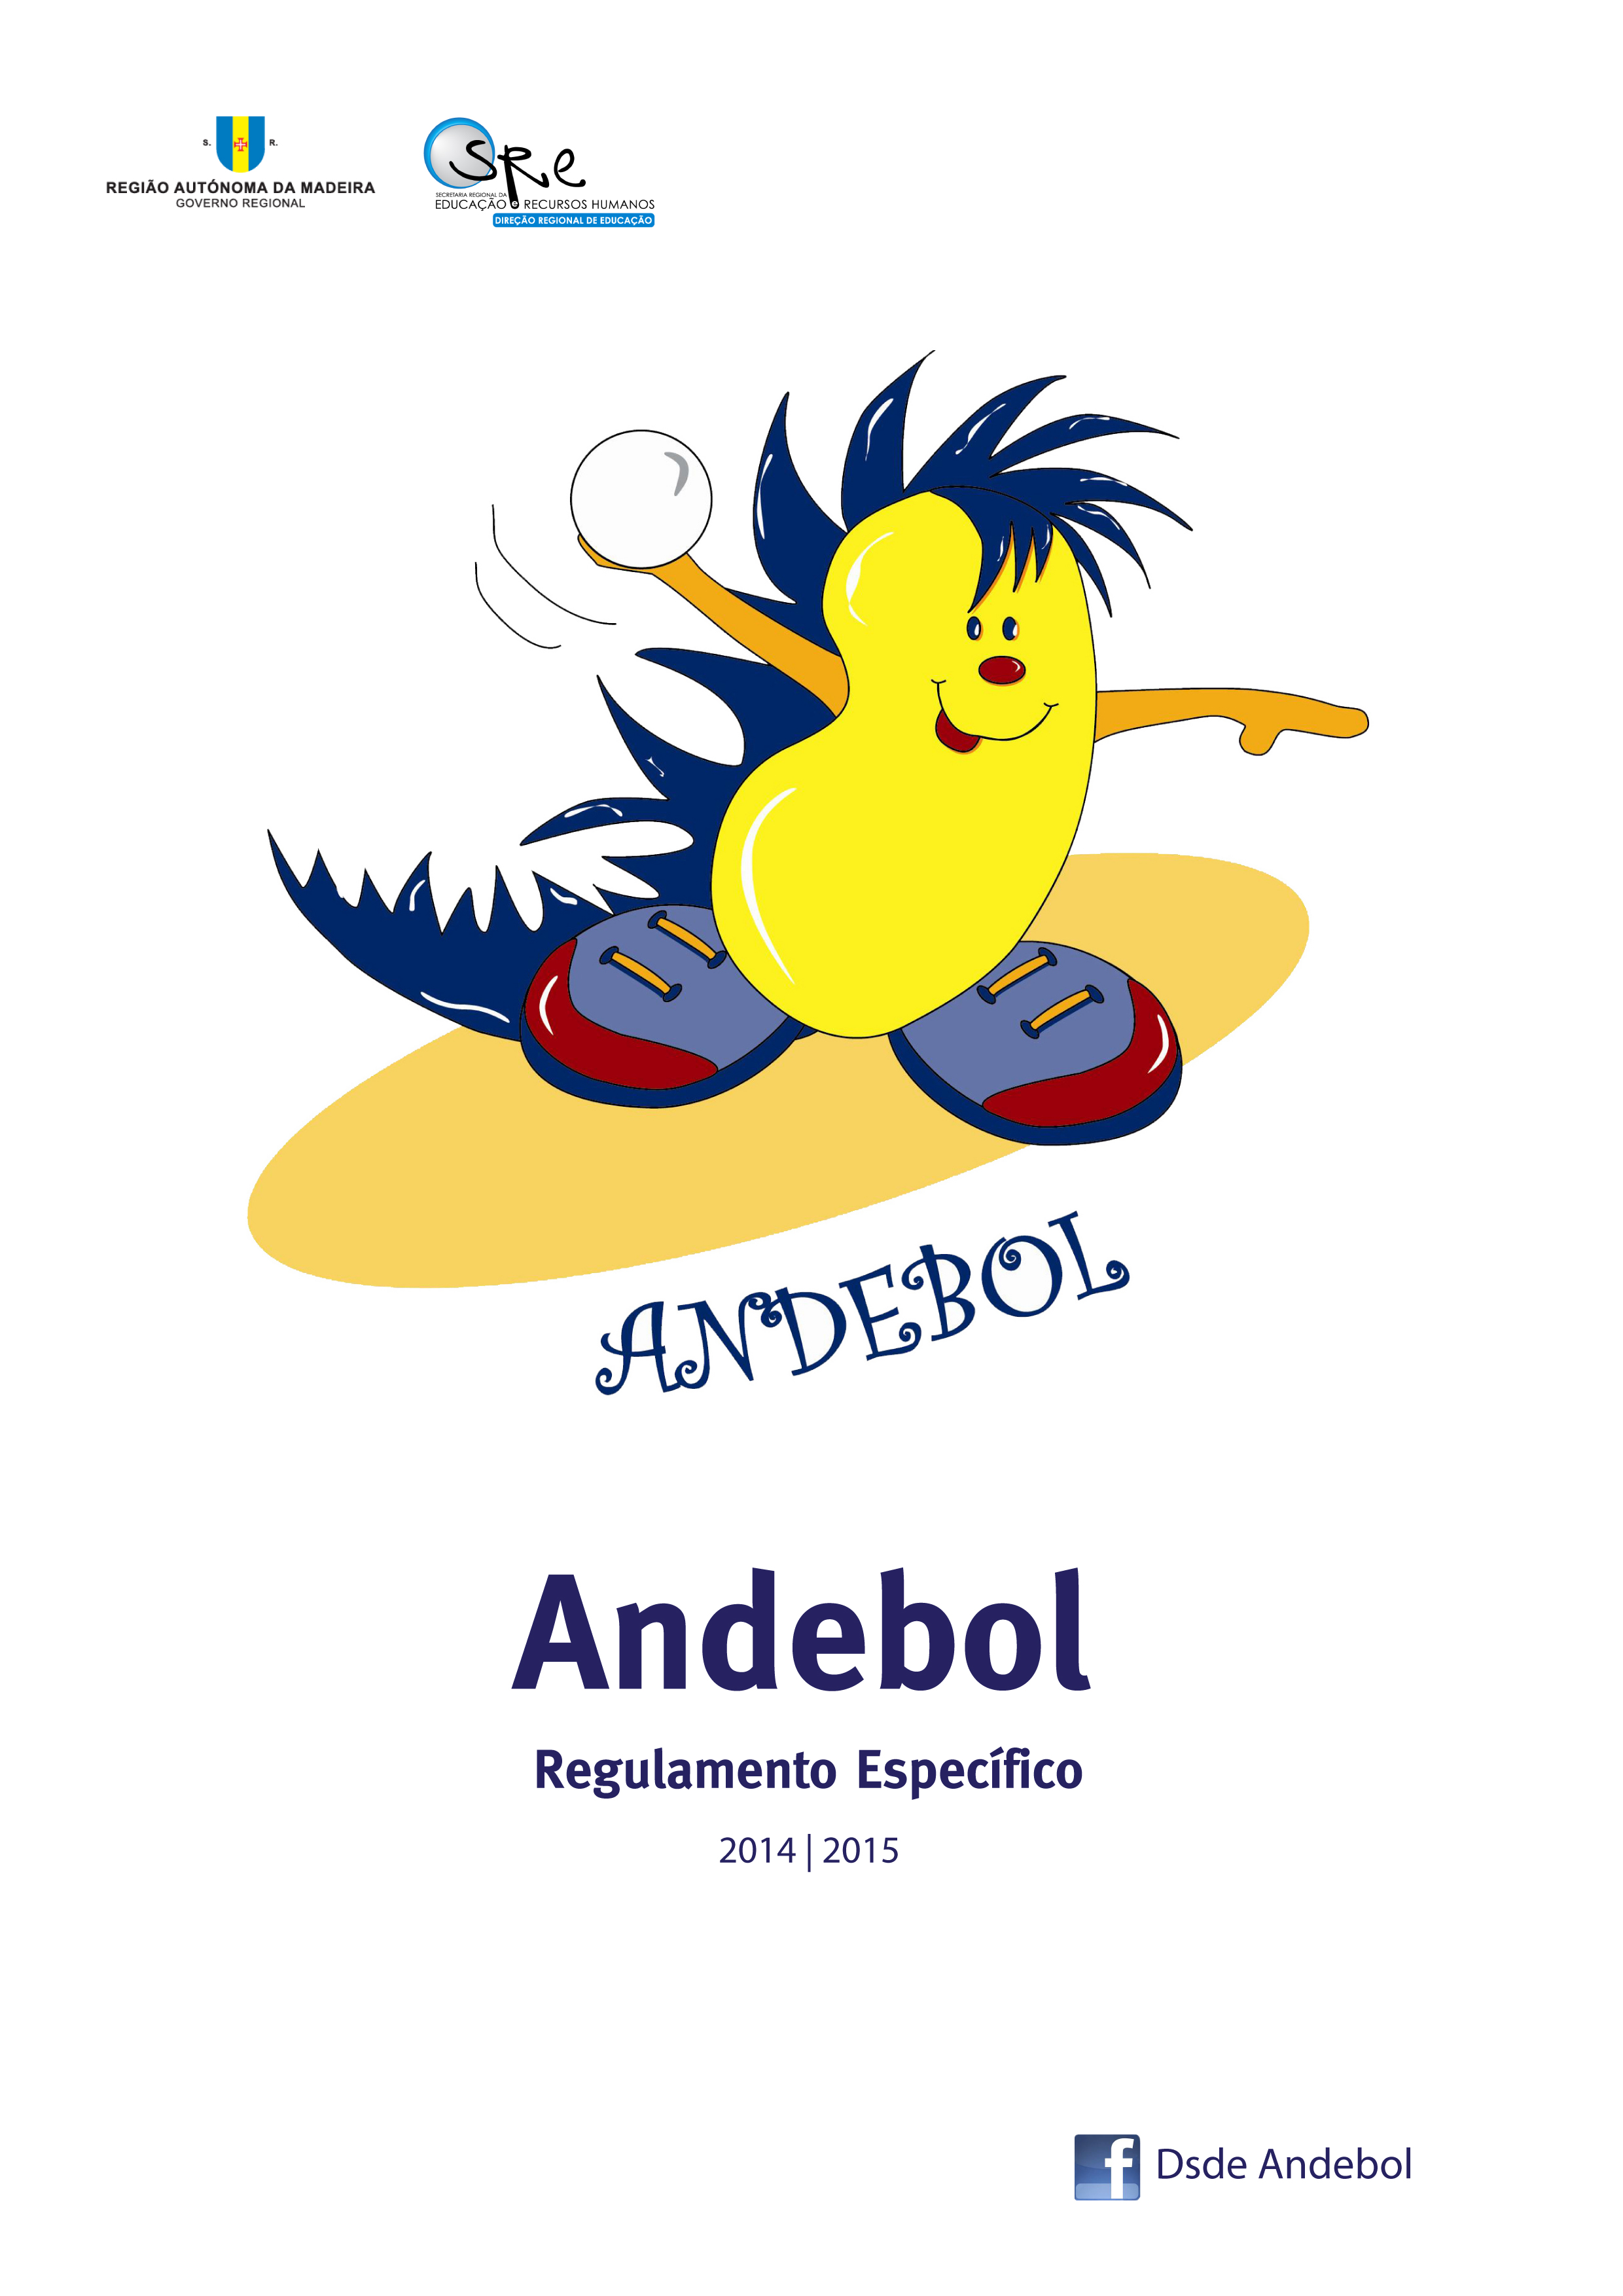 Regulamento Específico de Andebol 2014/15